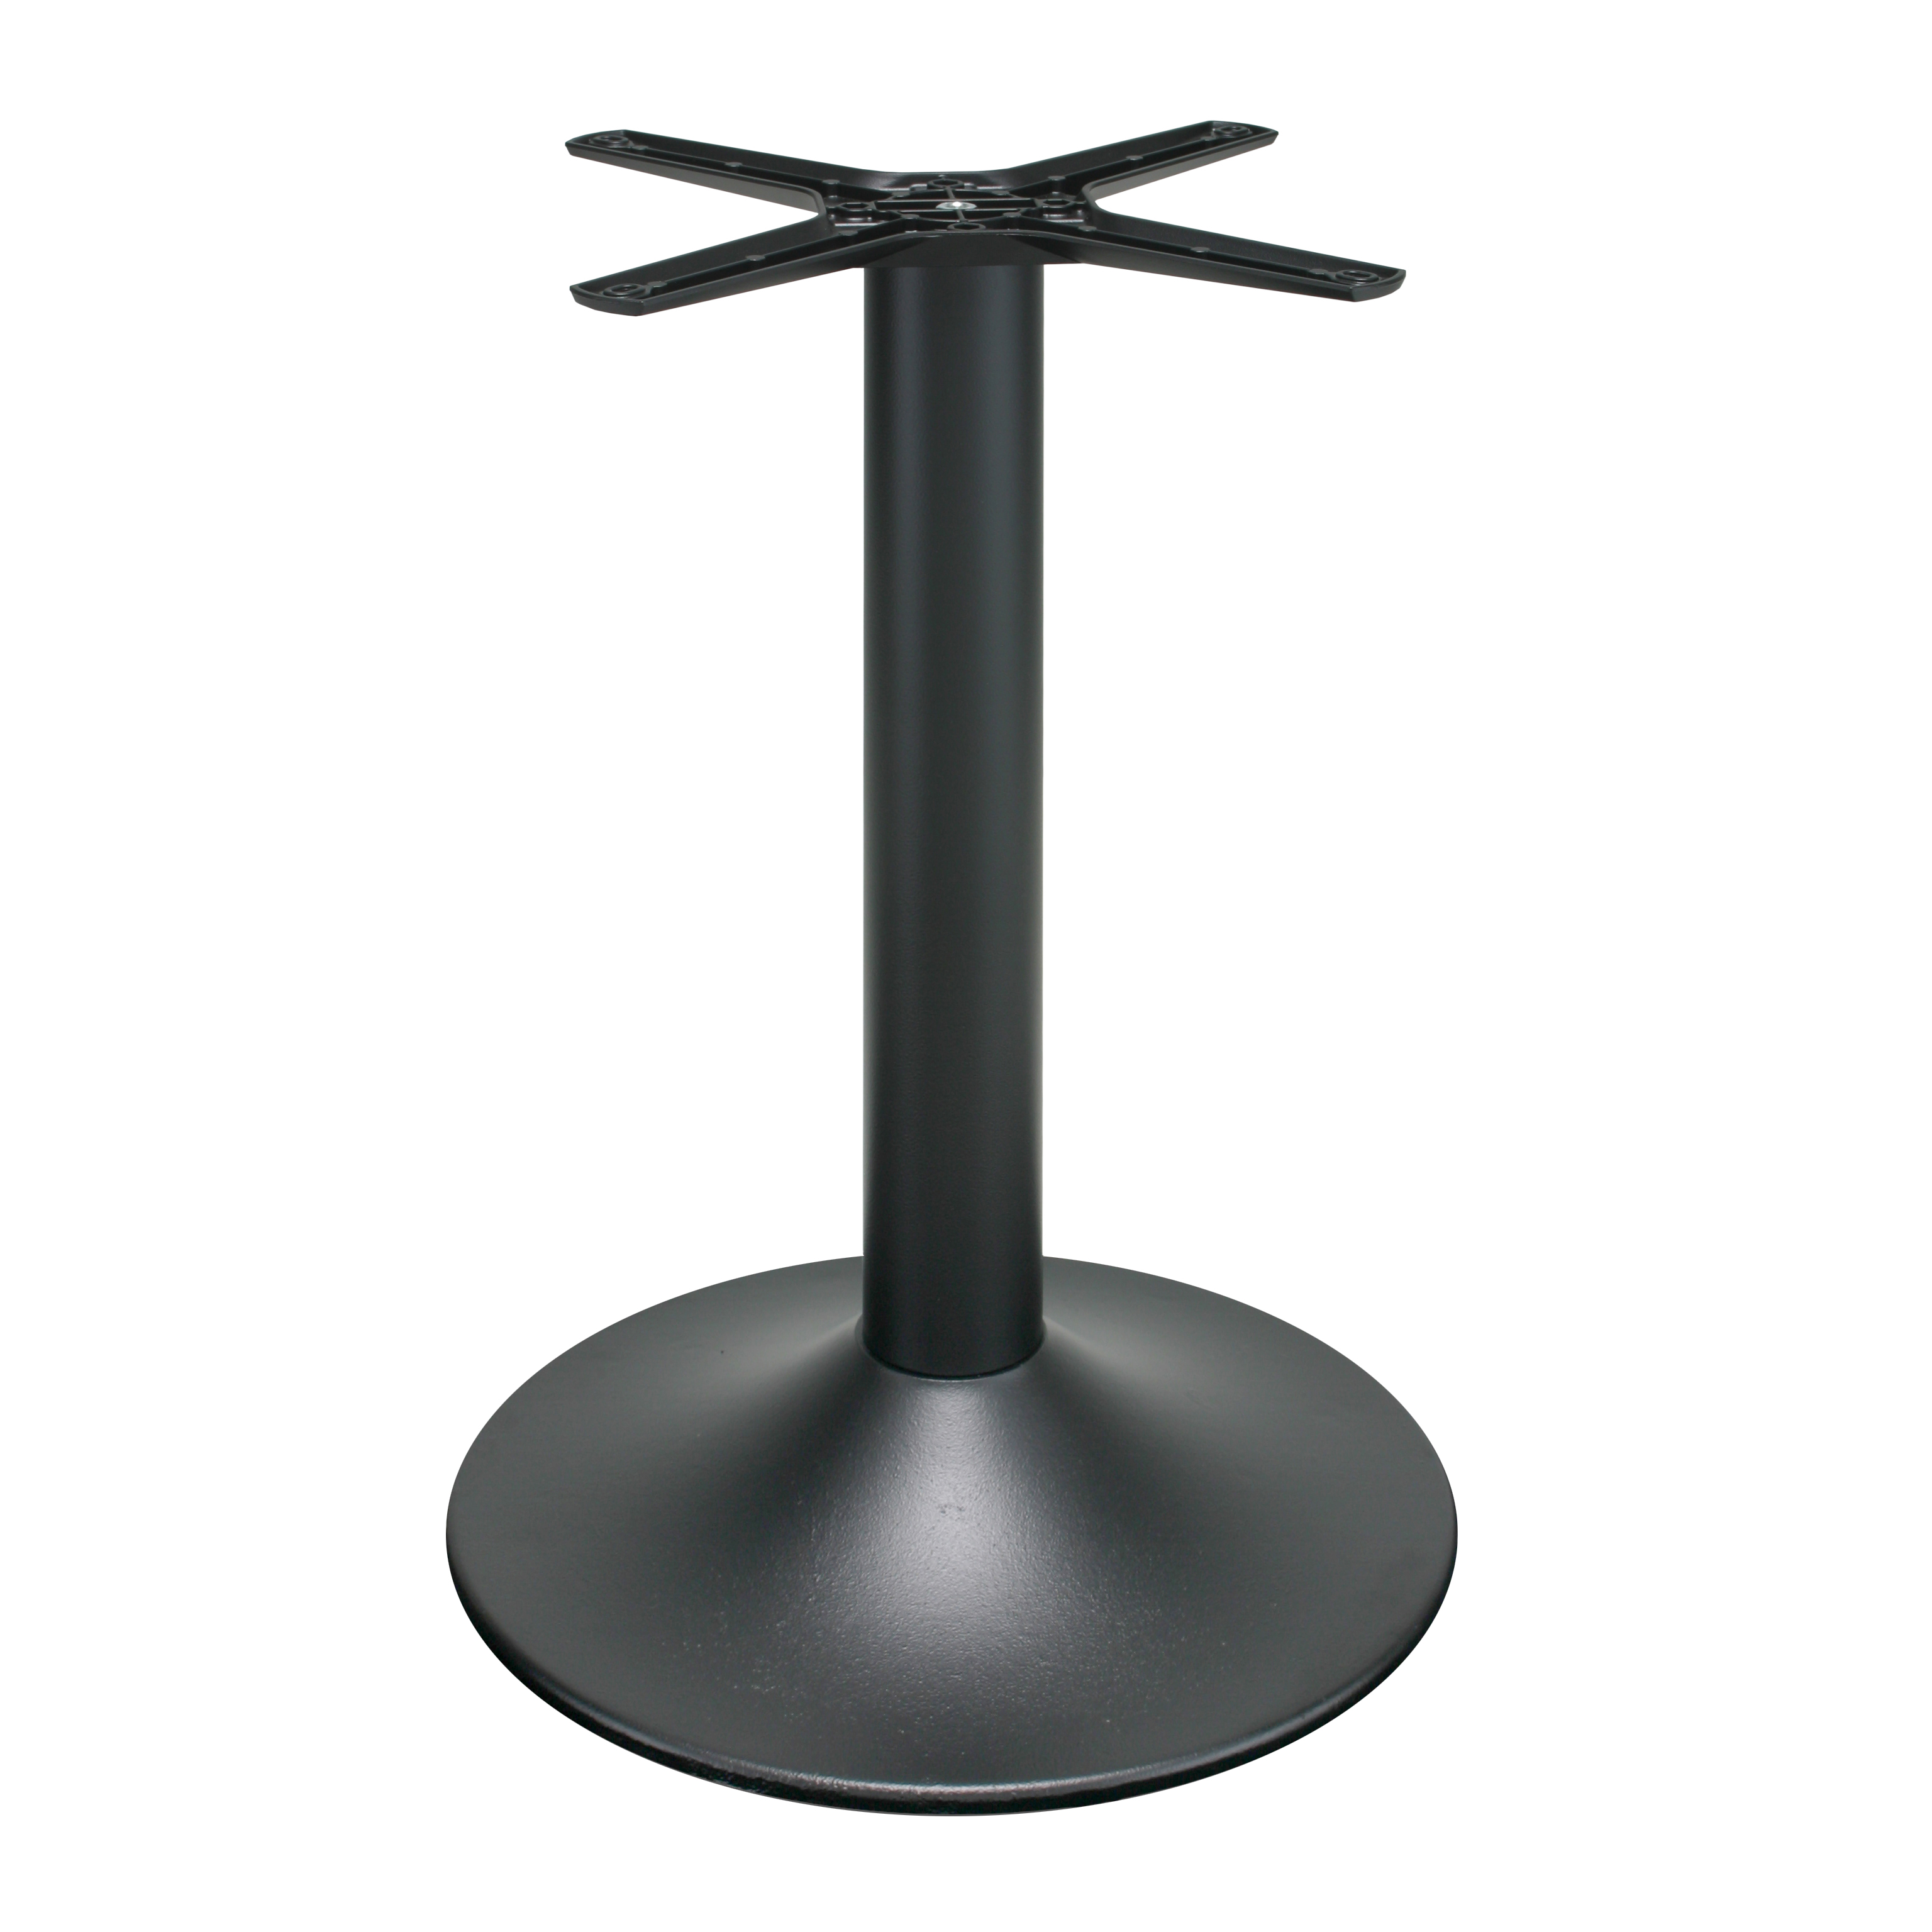 Gusseisen Tischgestell (Tischbein) P2002, pulverbeschichtet - schwarz, rund